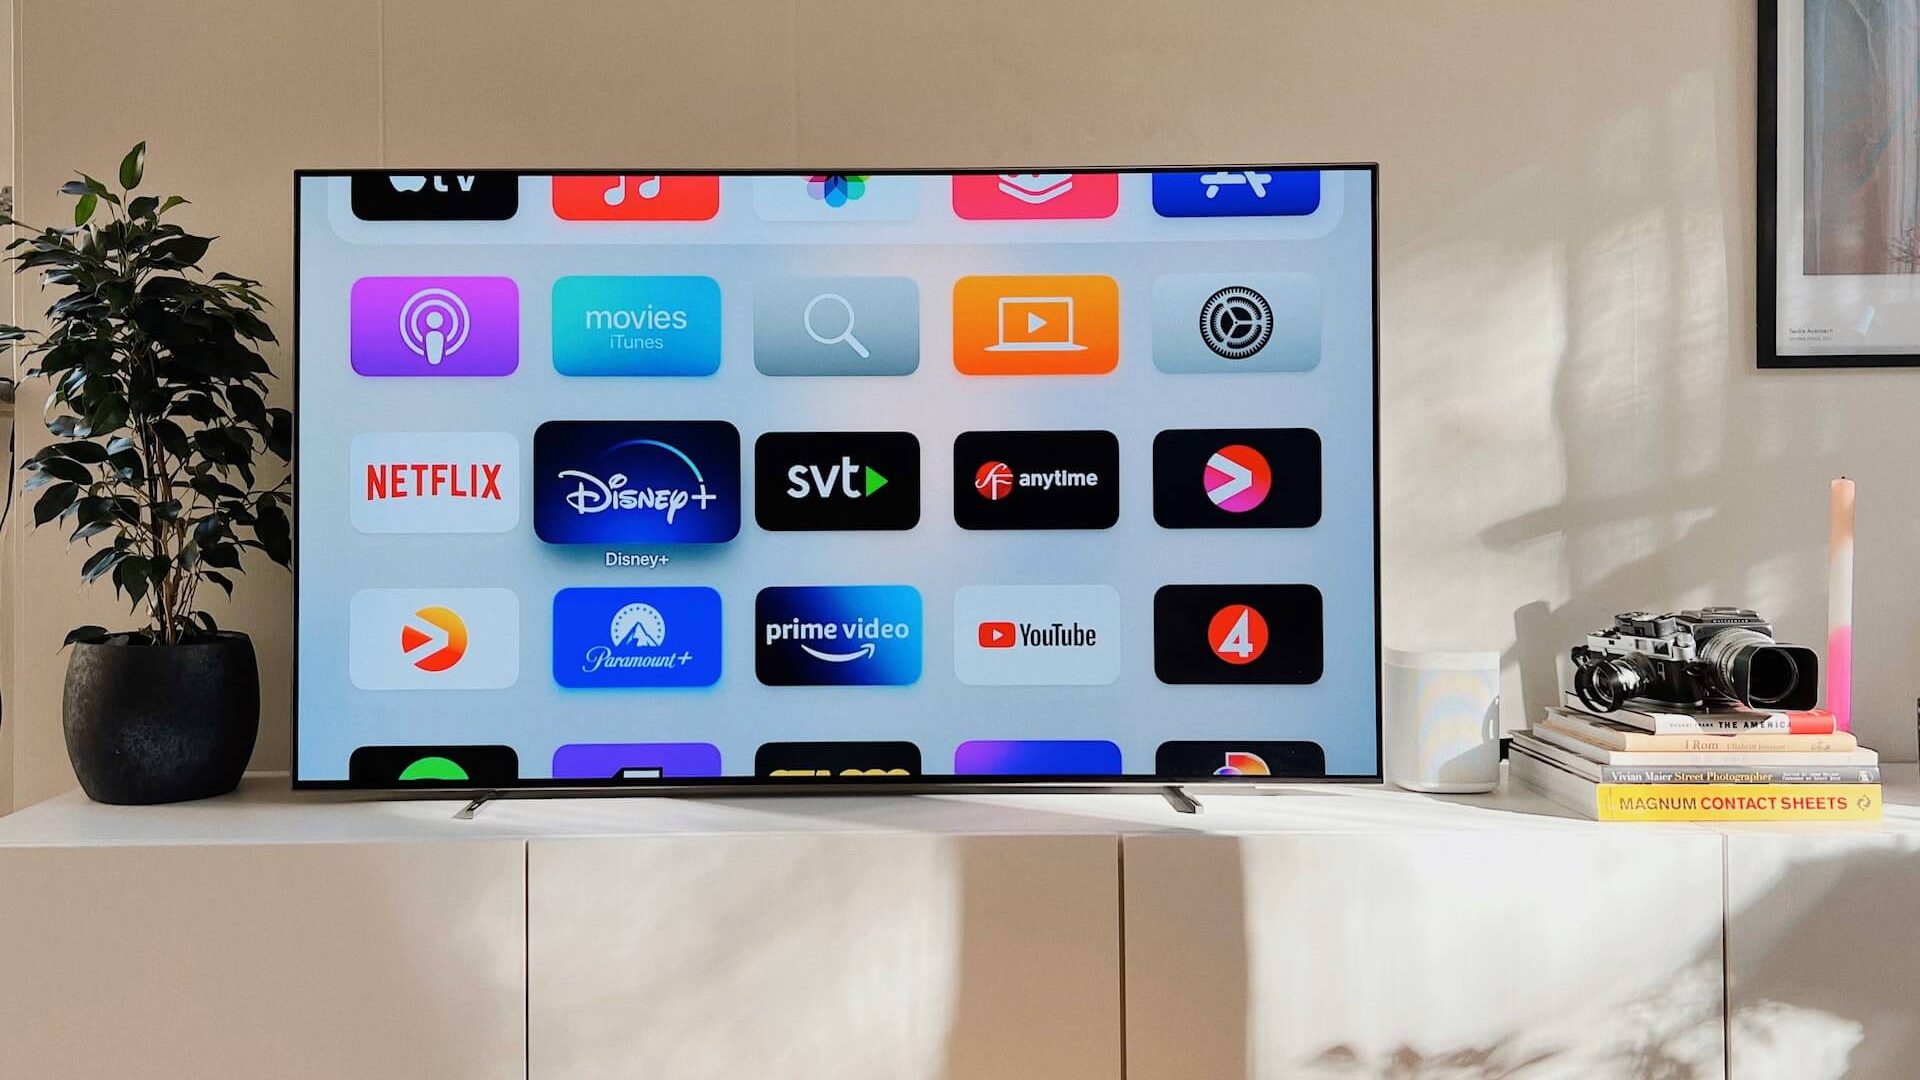 Ein Fernsehbildschirm, auf dem verschiedene Symbole von Streaming-Diensten angezeigt werden, die eine Auswahl an Unterhaltungsmöglichkeiten bieten.